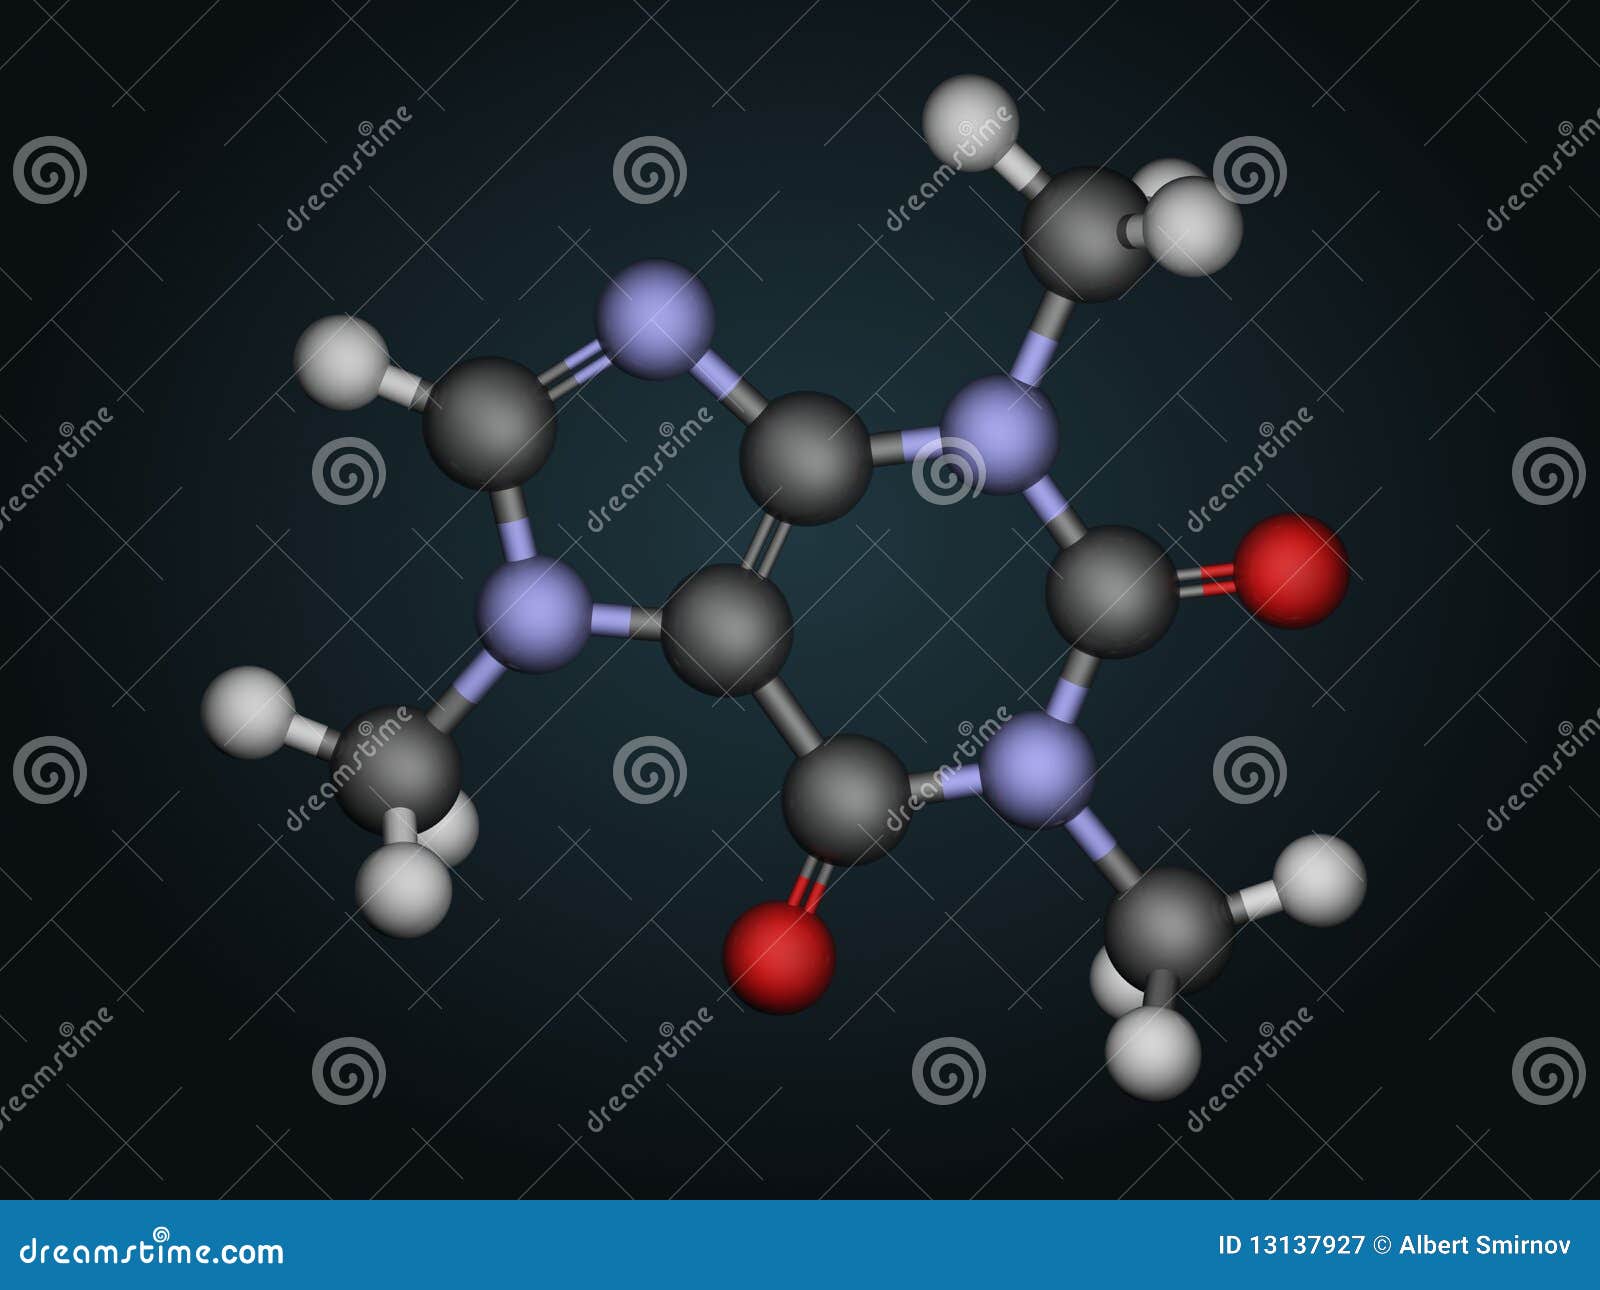 molecular structure of caffeine